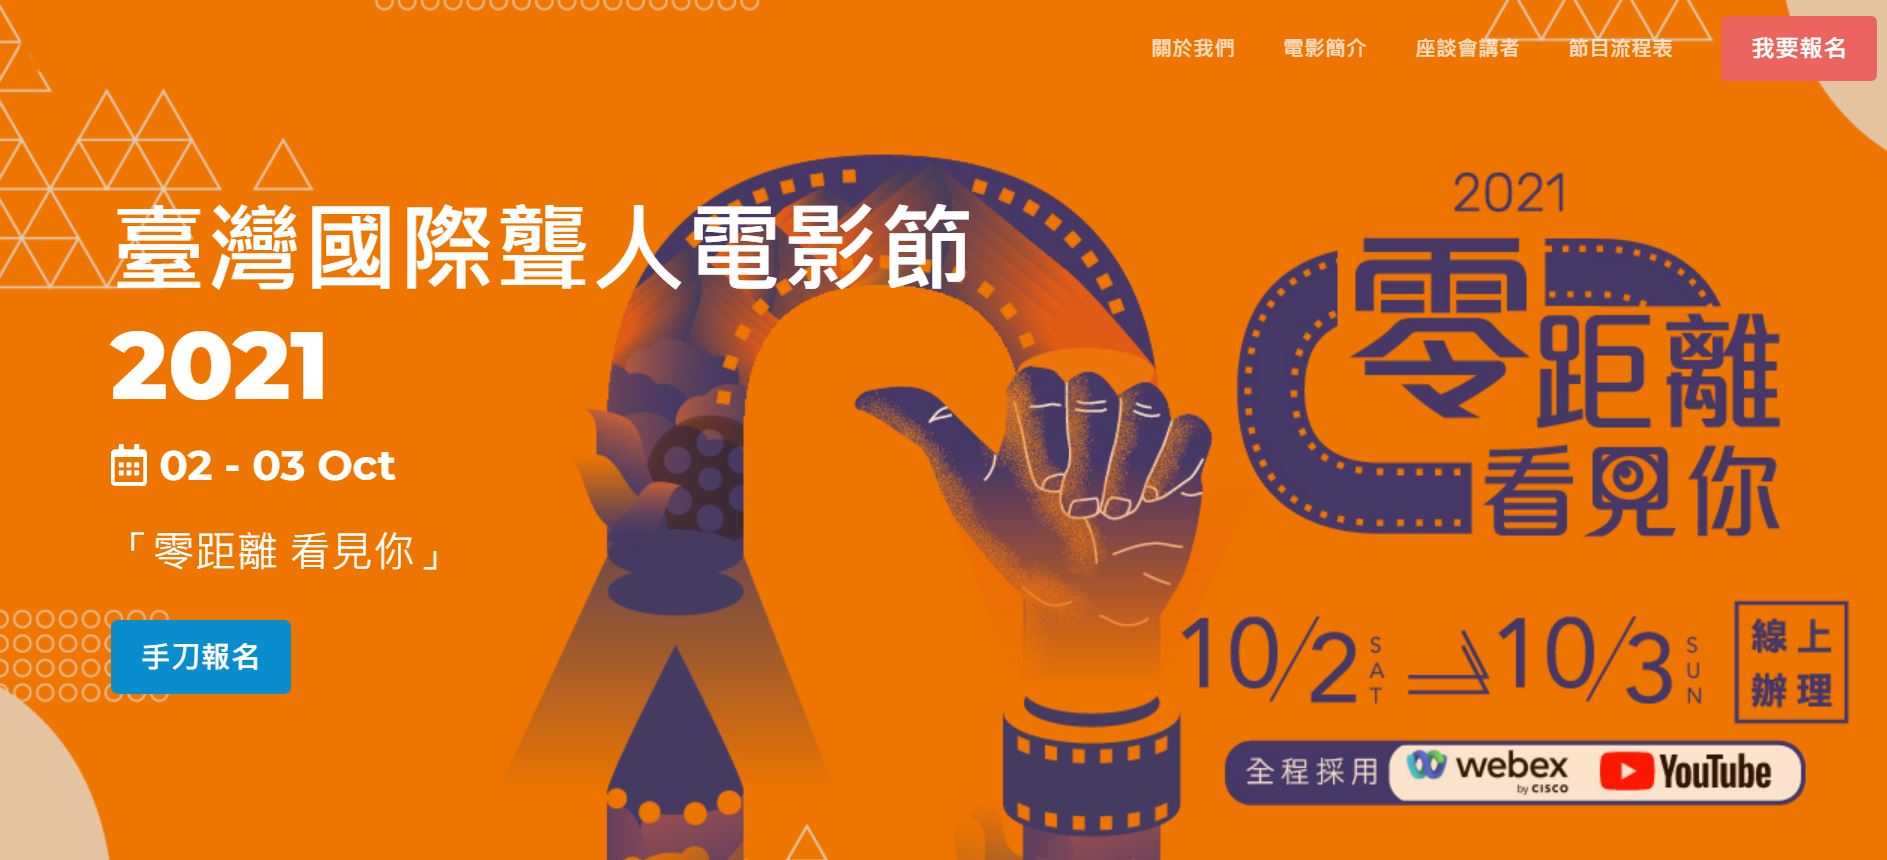 Liên hoan phim quốc tế người khiếm thính tại Đài Loan 2021 với chủ đề “零距離 看見你” (tạm dịch: không còn khoảng cách, thông qua phim ảnh để thấy được câu chuyện của người khiếm thính). (Nguồn ảnh: Bảo tàng Văn học Đài Loan)